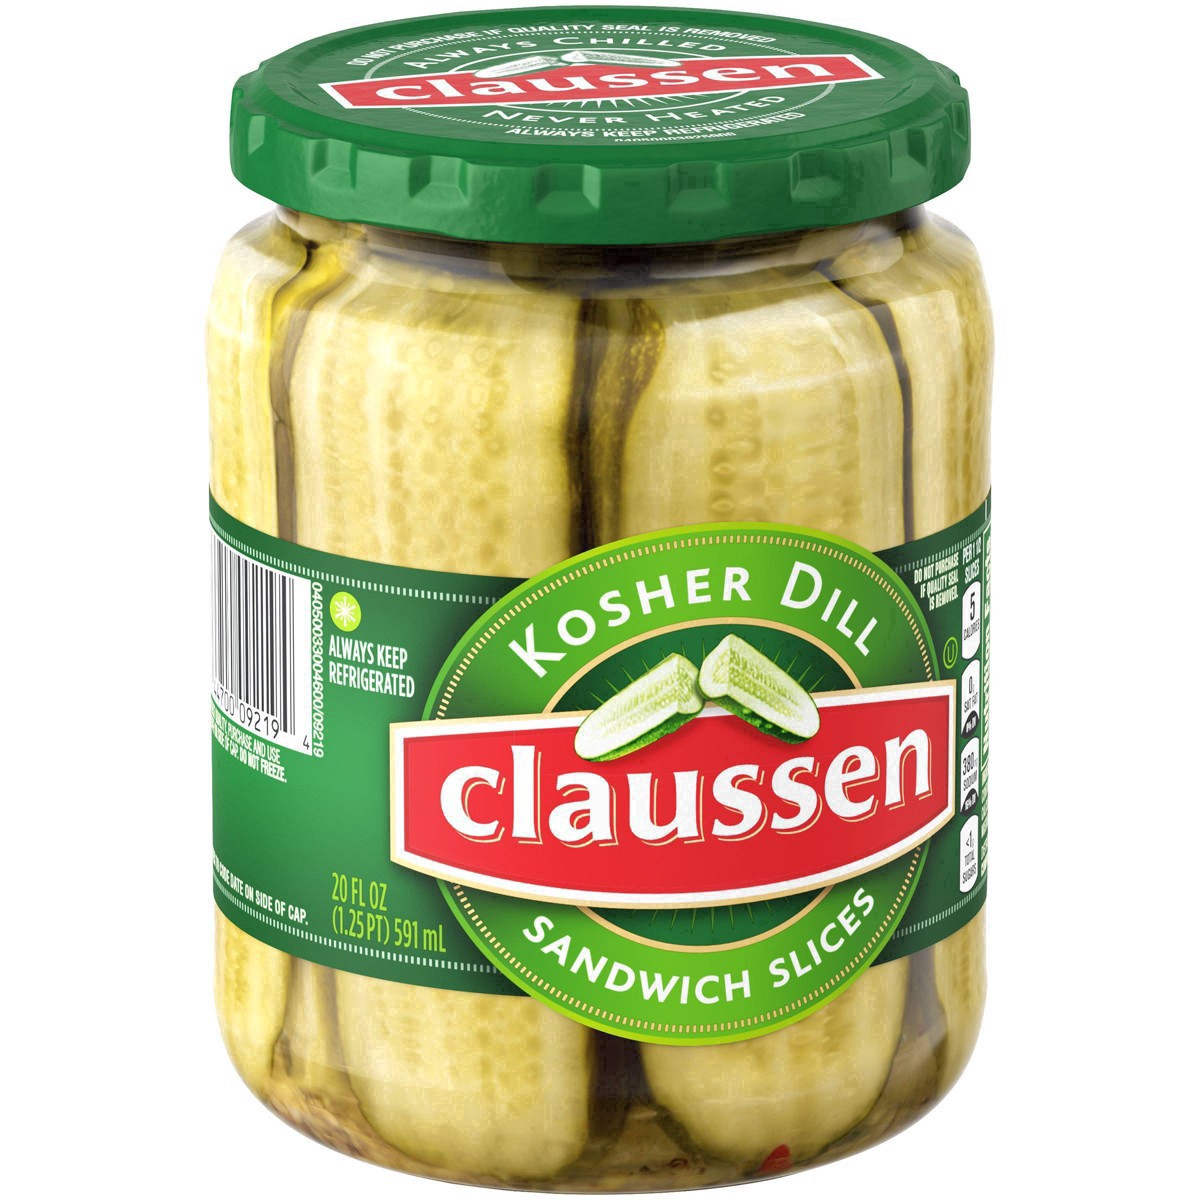 slide 121 of 144, Claussen Kosher Dill Pickle Sandwich Slices, 20 fl. oz. Jar, 20 fl oz